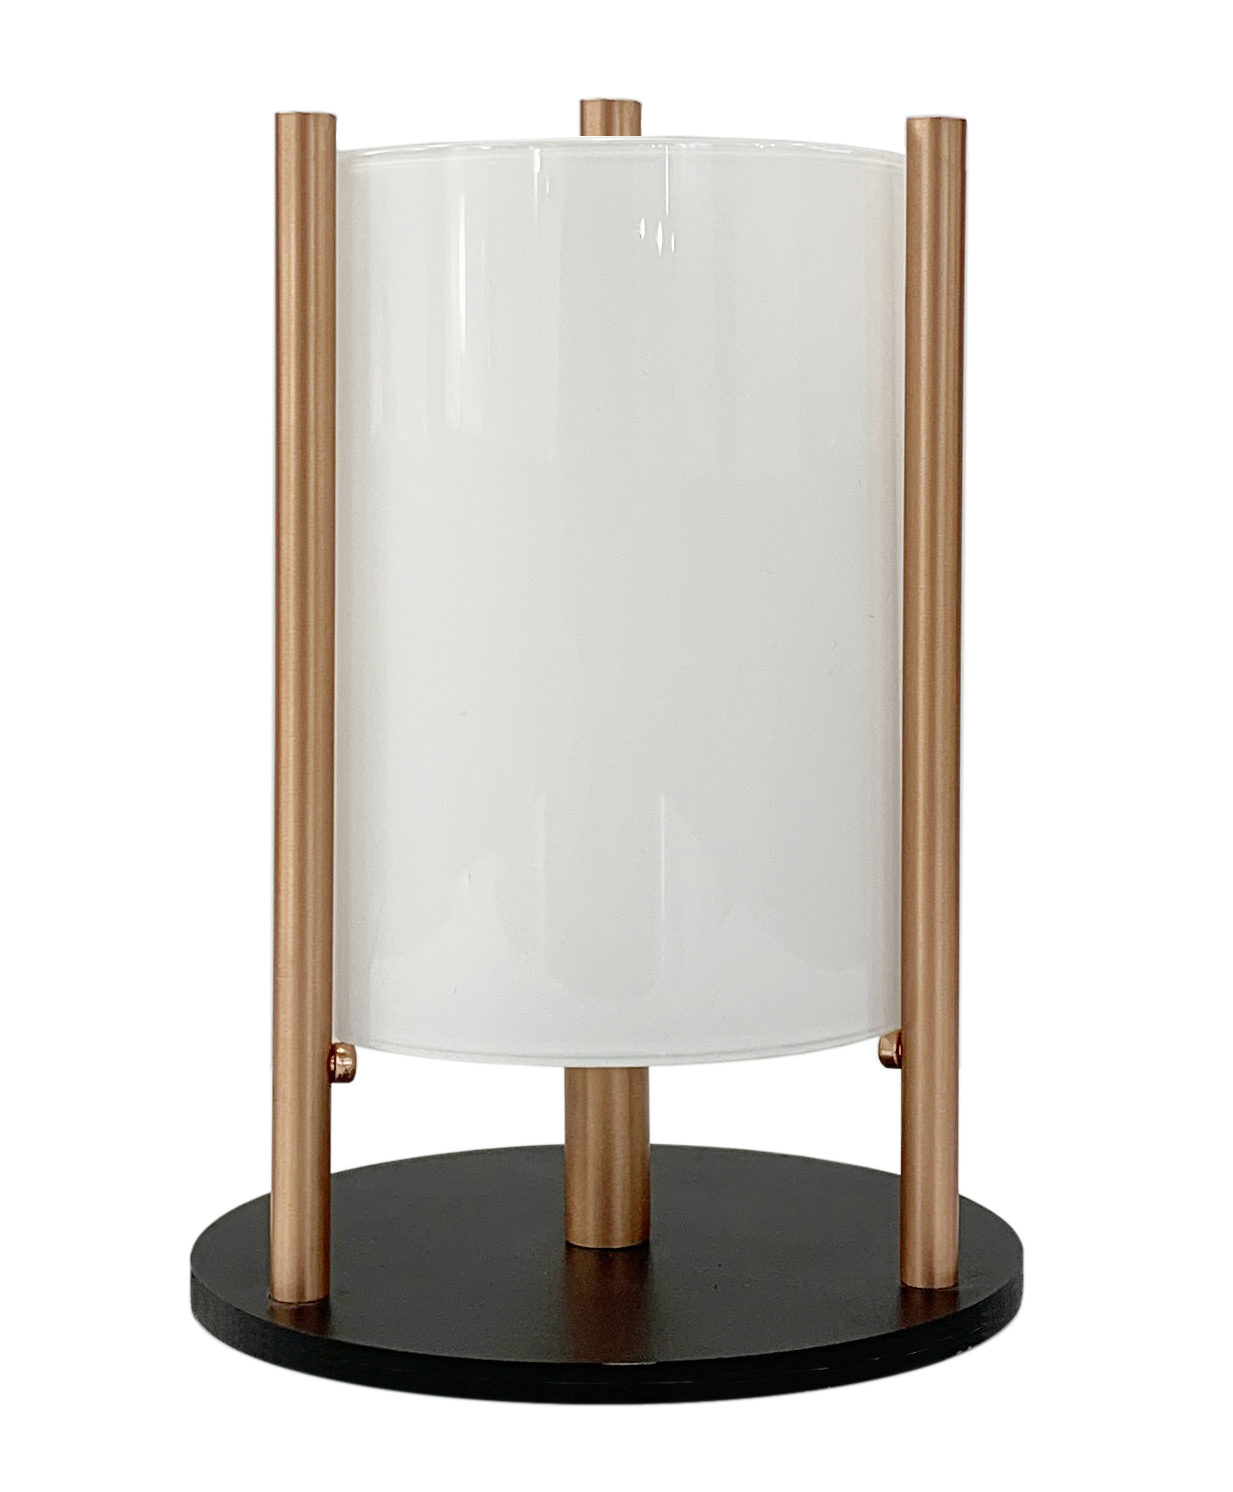 NOA, la lámpara de sobremesa de Pujol Iluminación de estilo Bauhaus